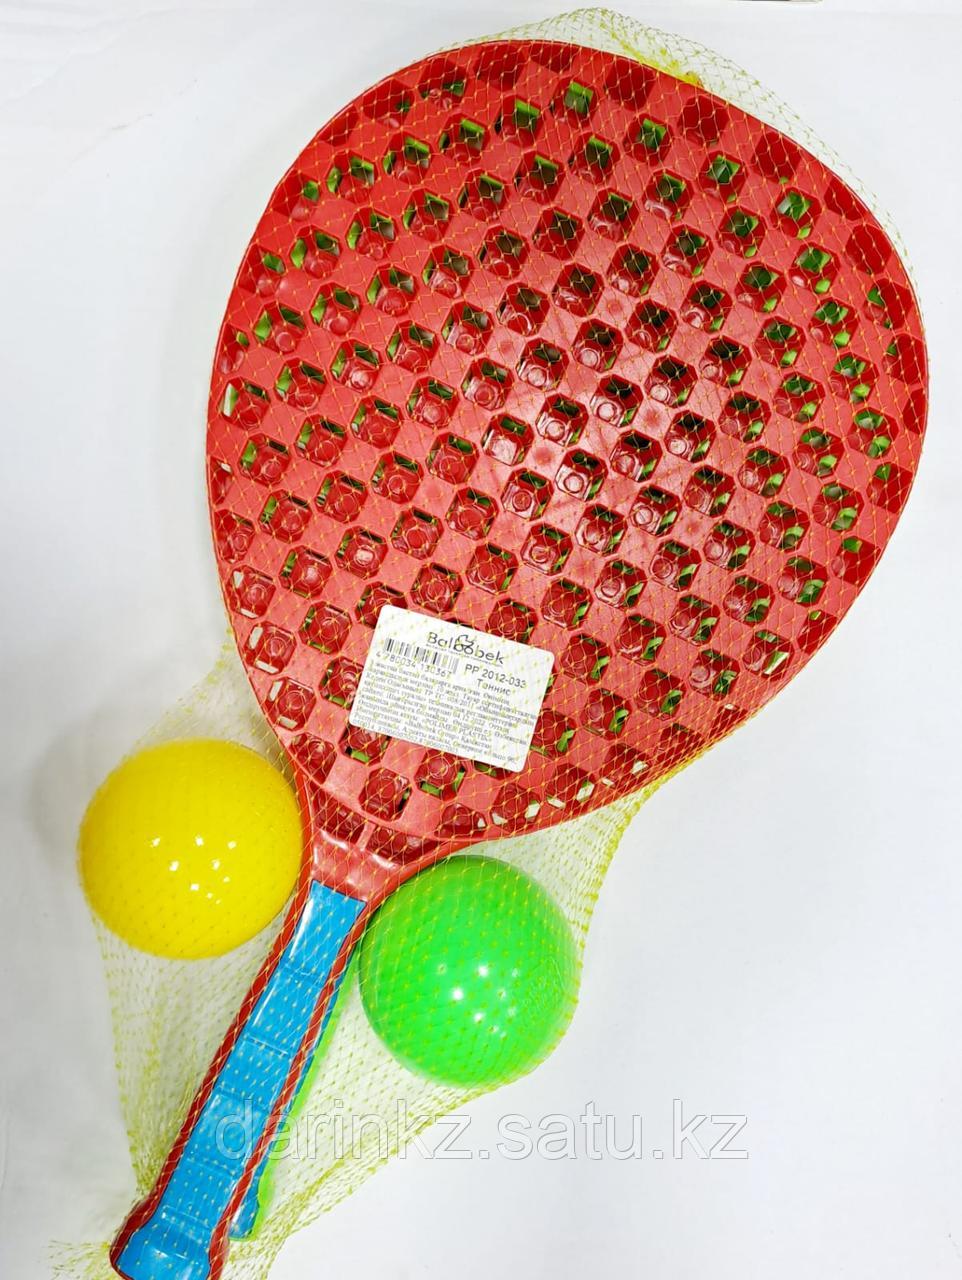 Пластмассовый игрушечный набор "Теннис для детей", упак.полиэт.сетка. PP 2012-033